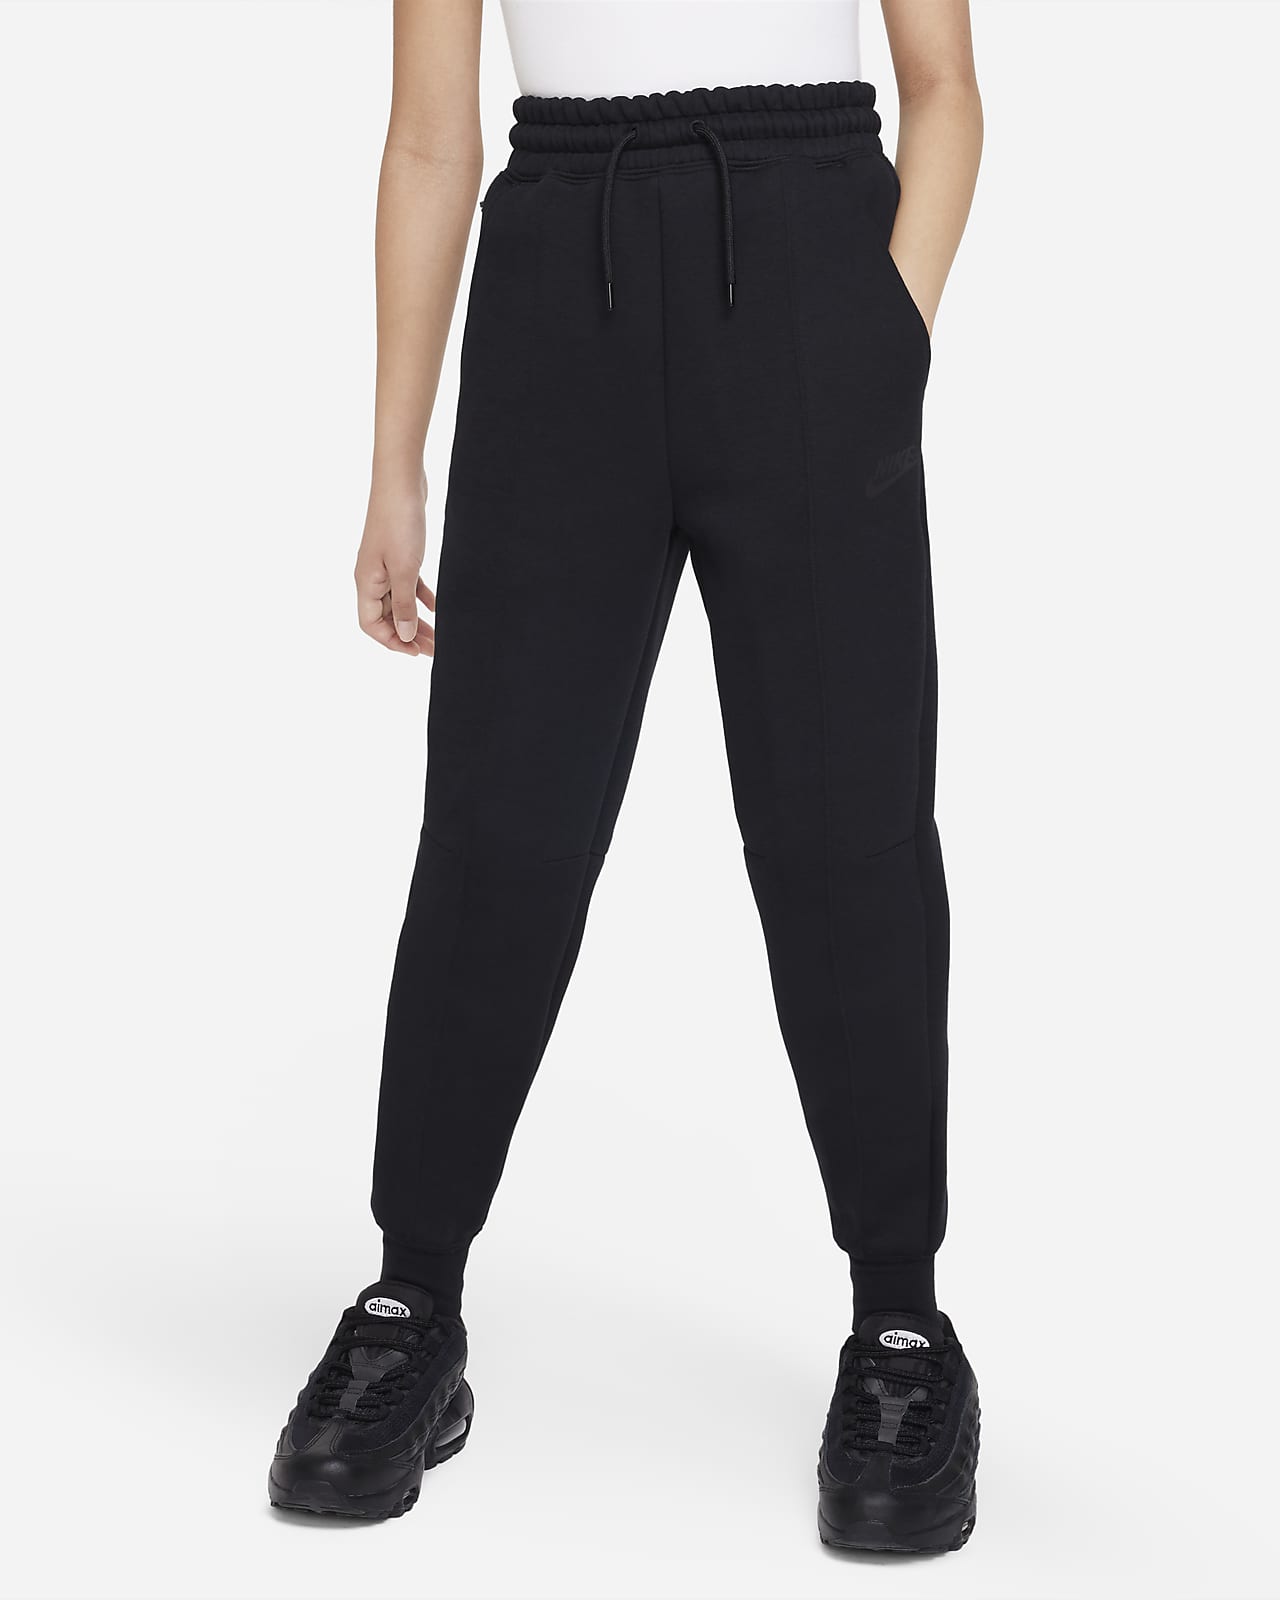 Παντελόνι φόρμας Nike Sportswear Tech Fleece για μεγάλα κορίτσια